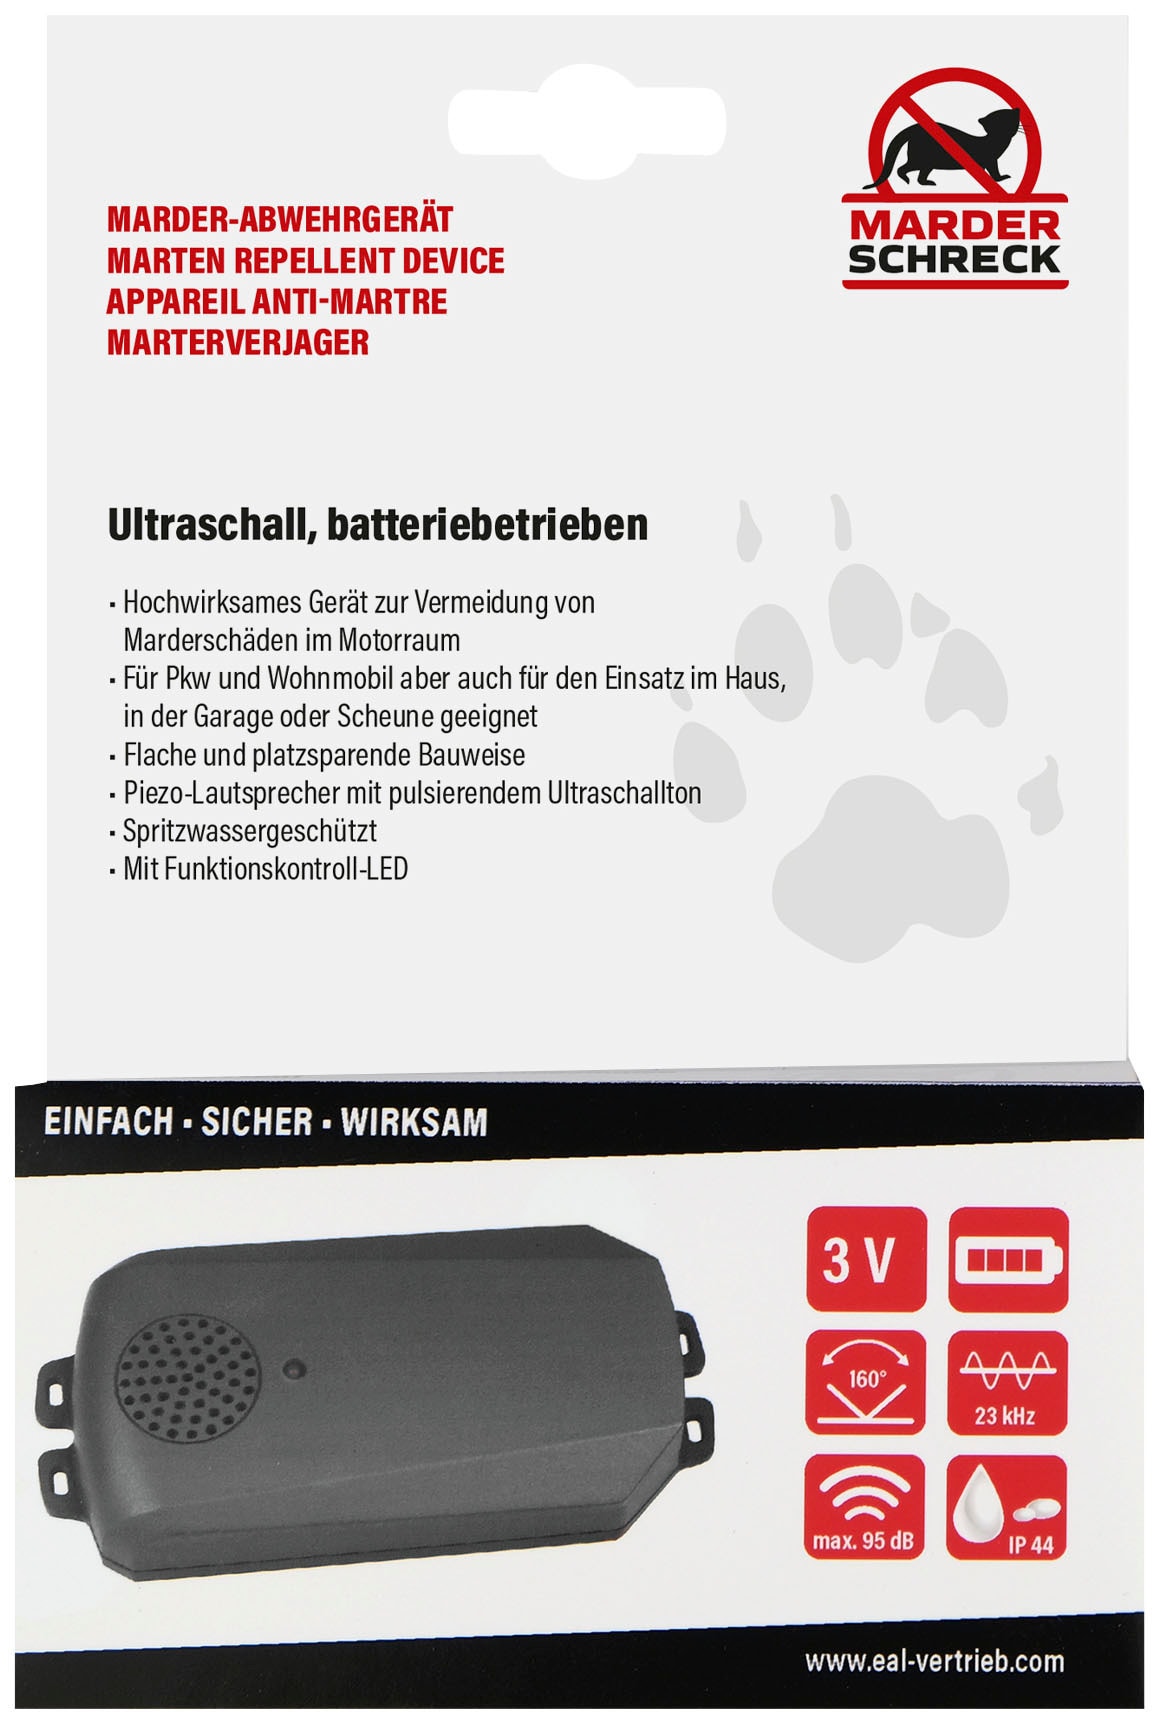 EUFAB Ultraschall-Tierabwehr, gegen Marder, für PKW und Wohnmobil